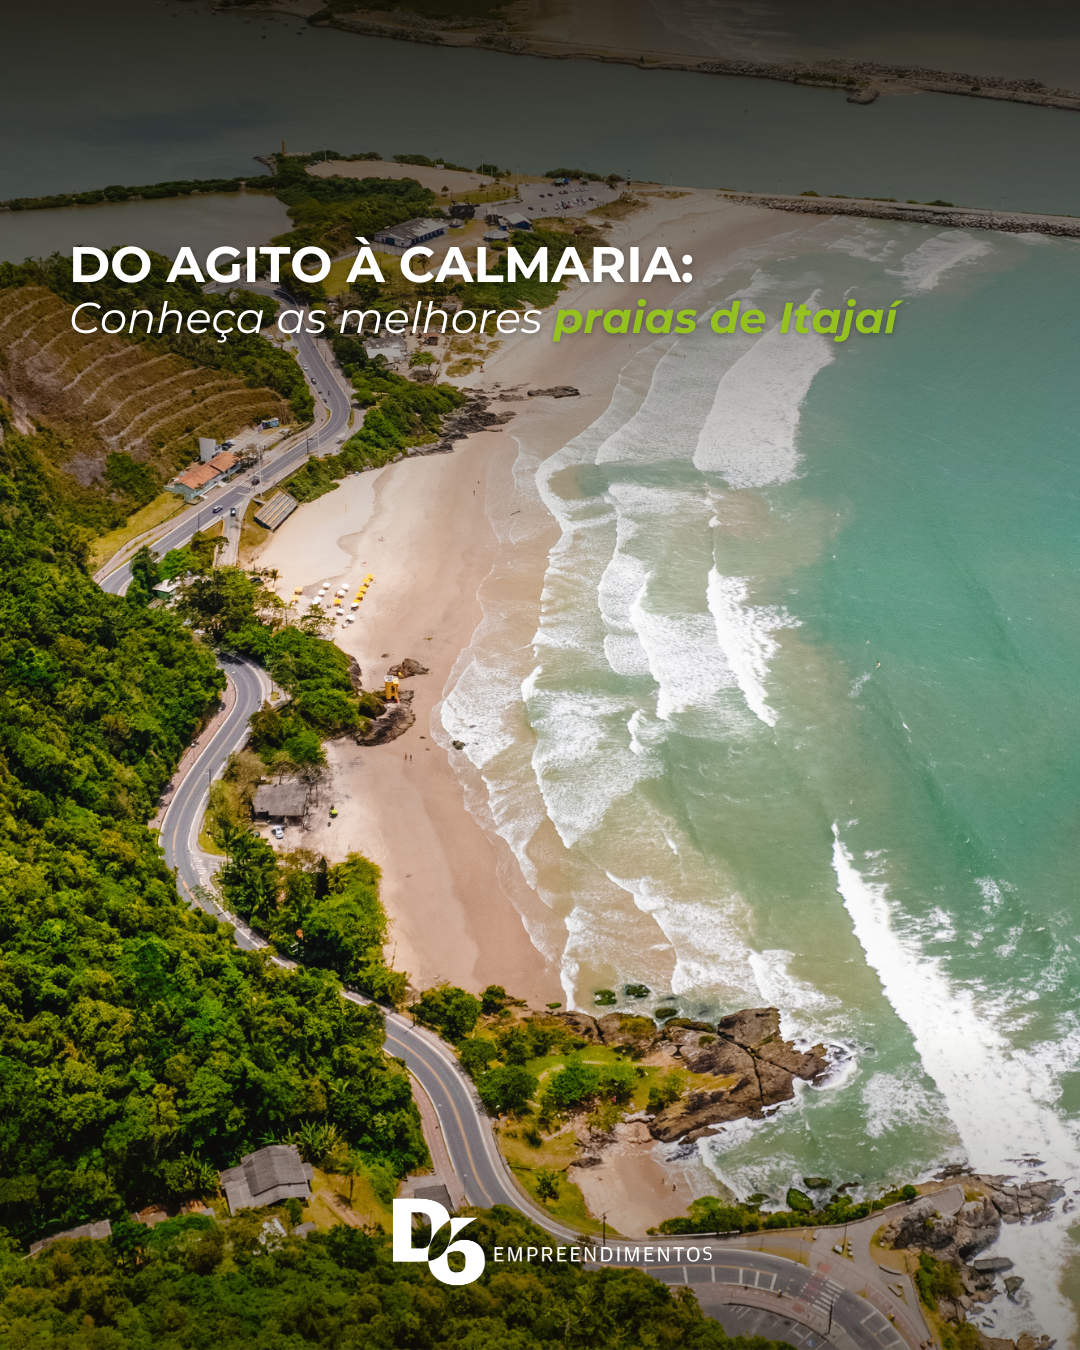 Do agito à calmaria: conheça as melhores praias de Itajaí, escolha a sua e divirta-se!